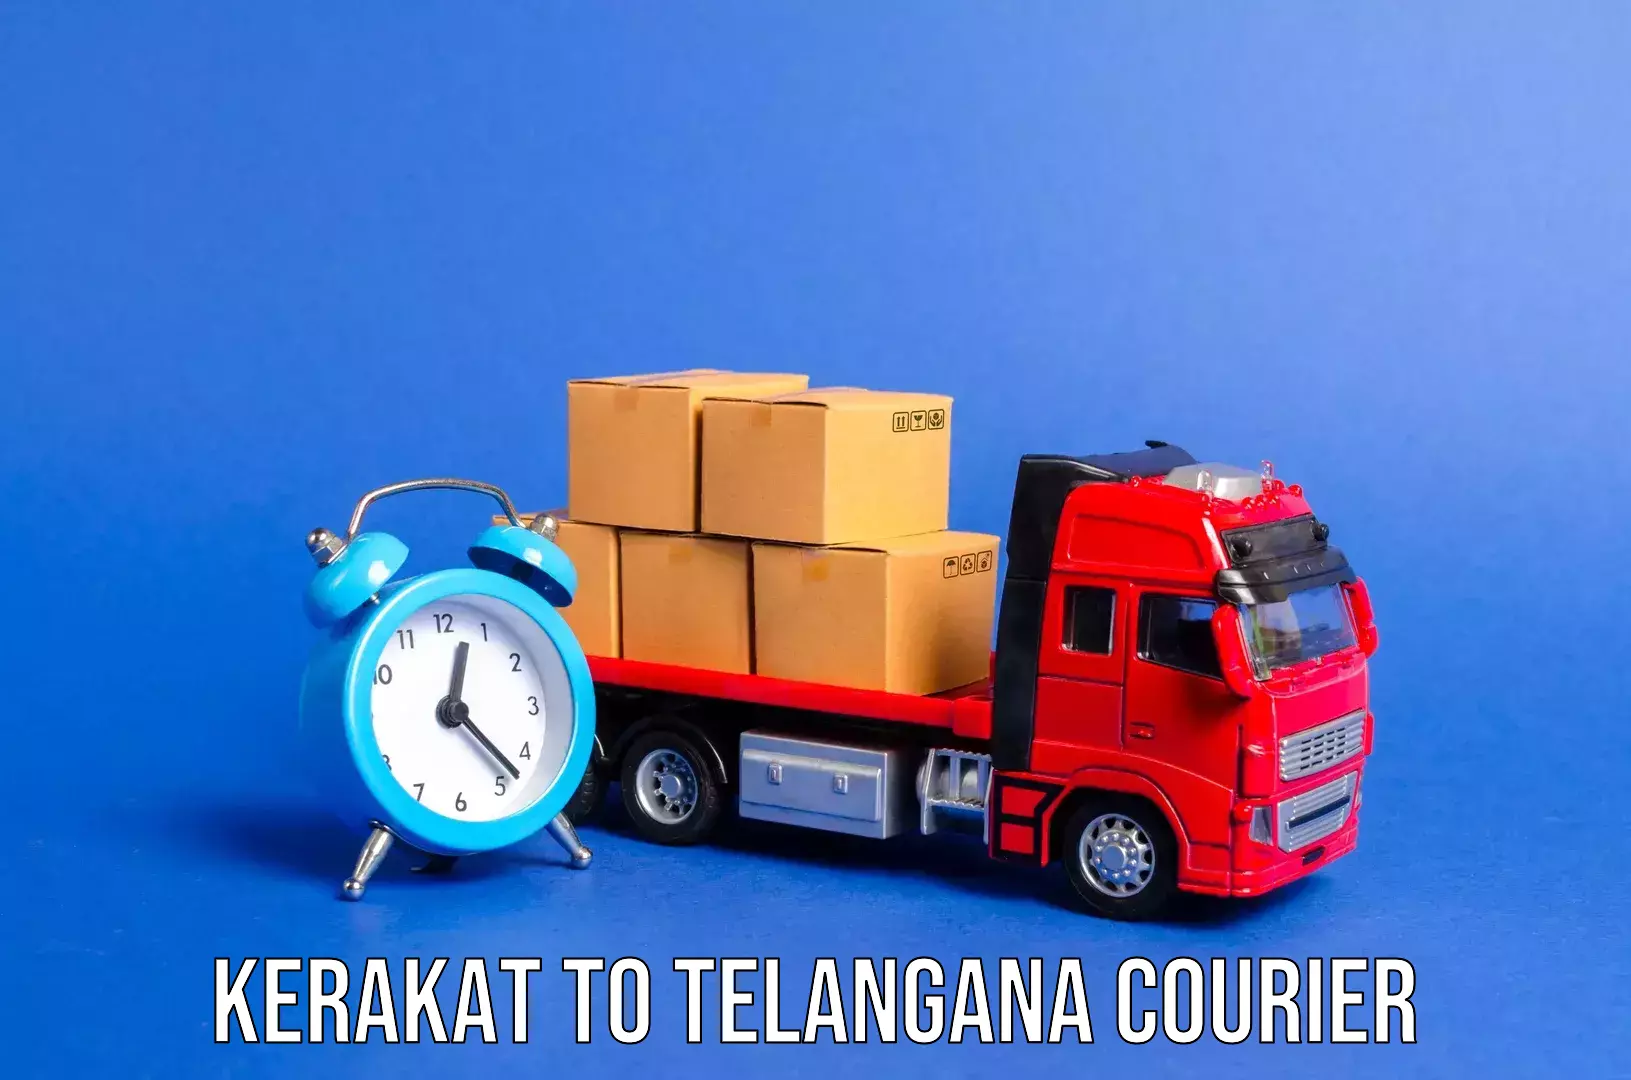 Overnight luggage courier Kerakat to Telangana